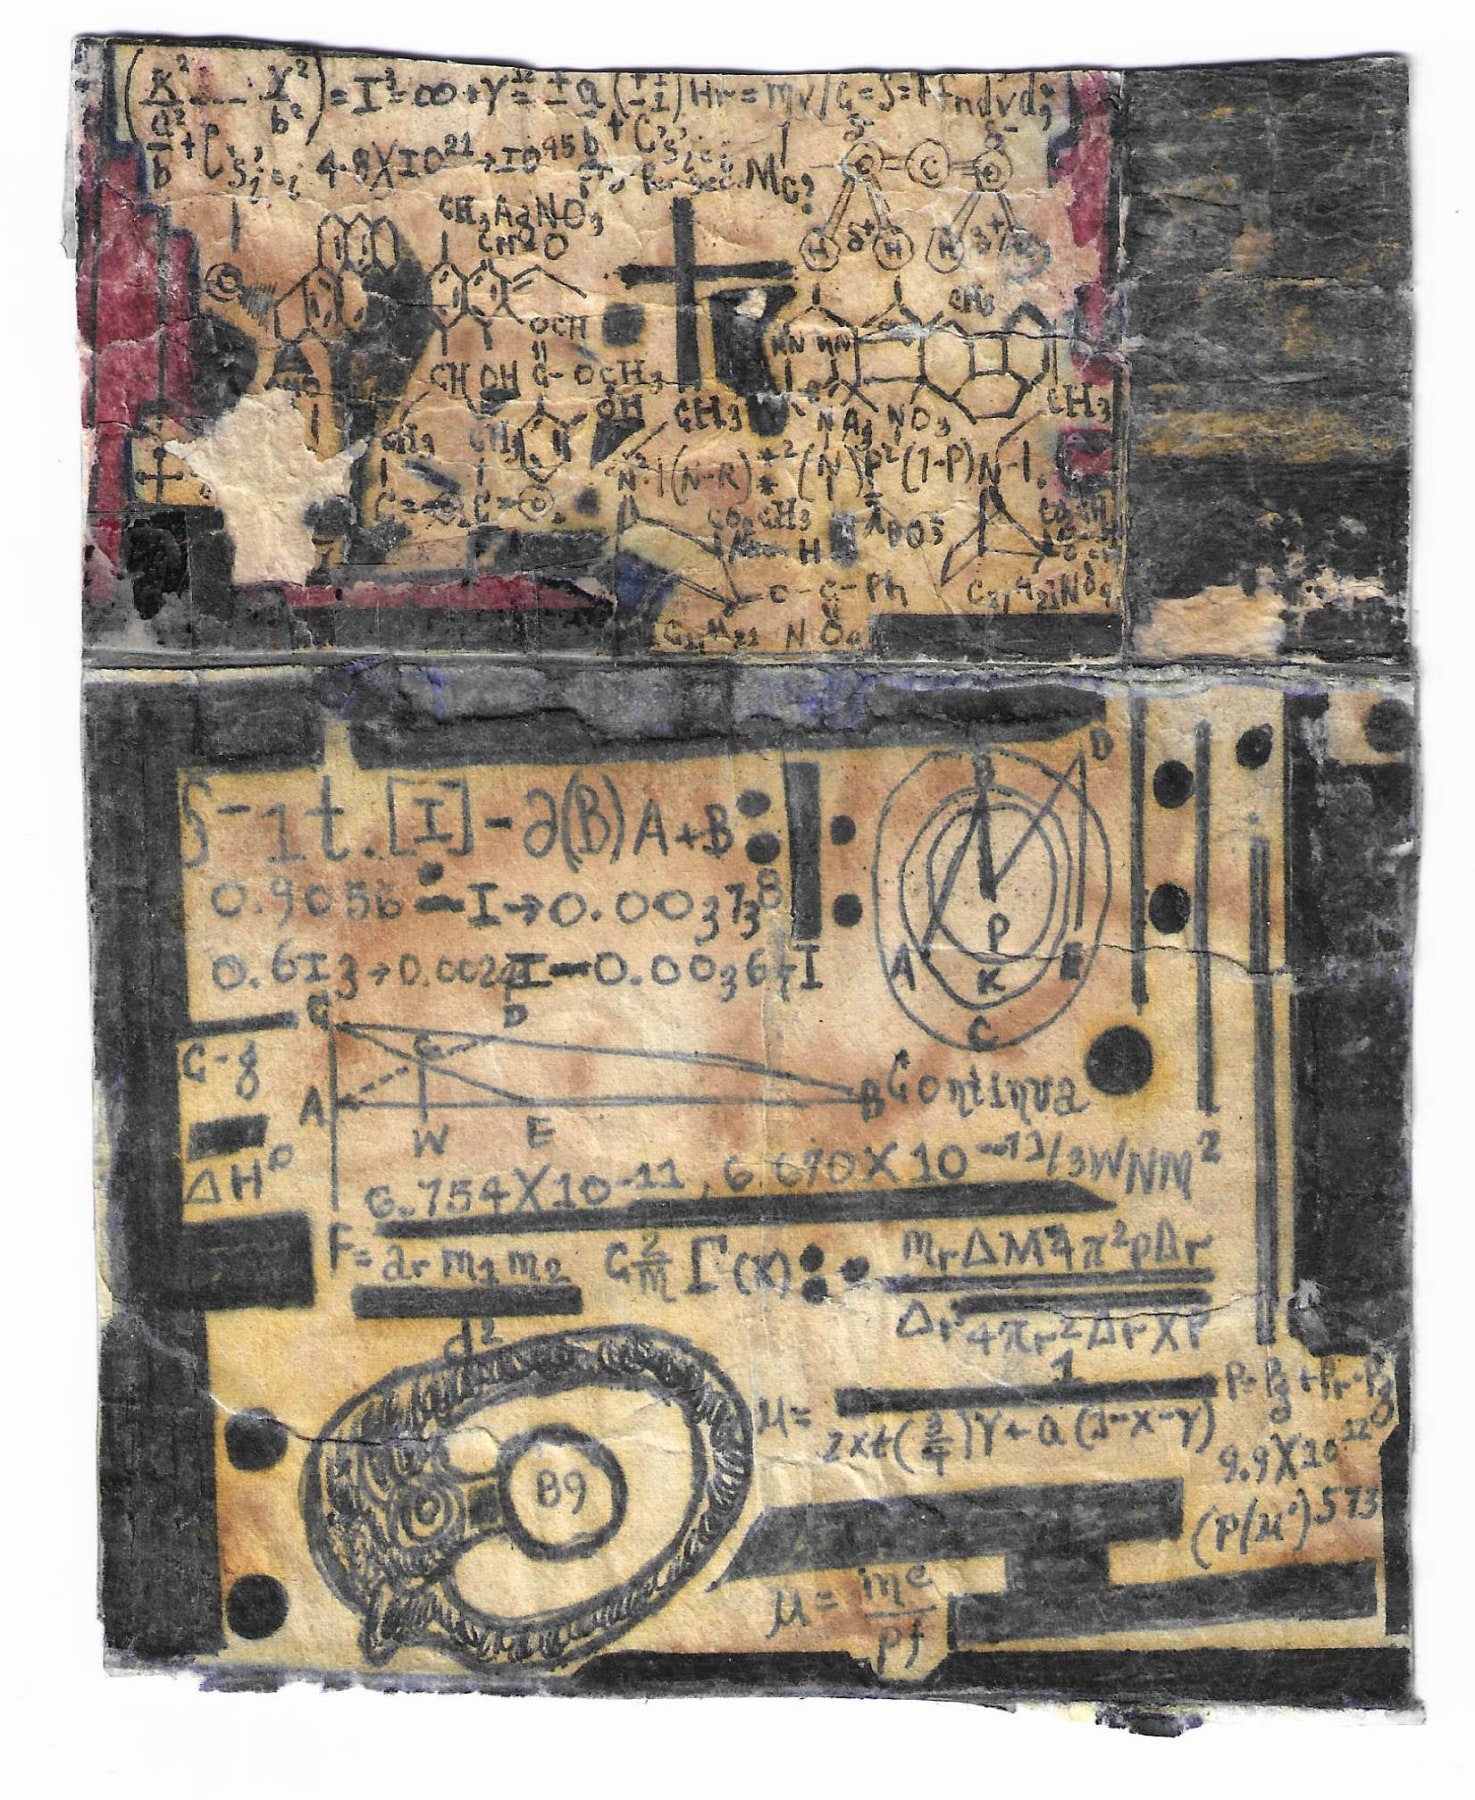 Melvin Way&nbsp;(1954) Etats-Unis, 89, 2013, Stylo bille sur papier, 15&nbsp;x 13 cm